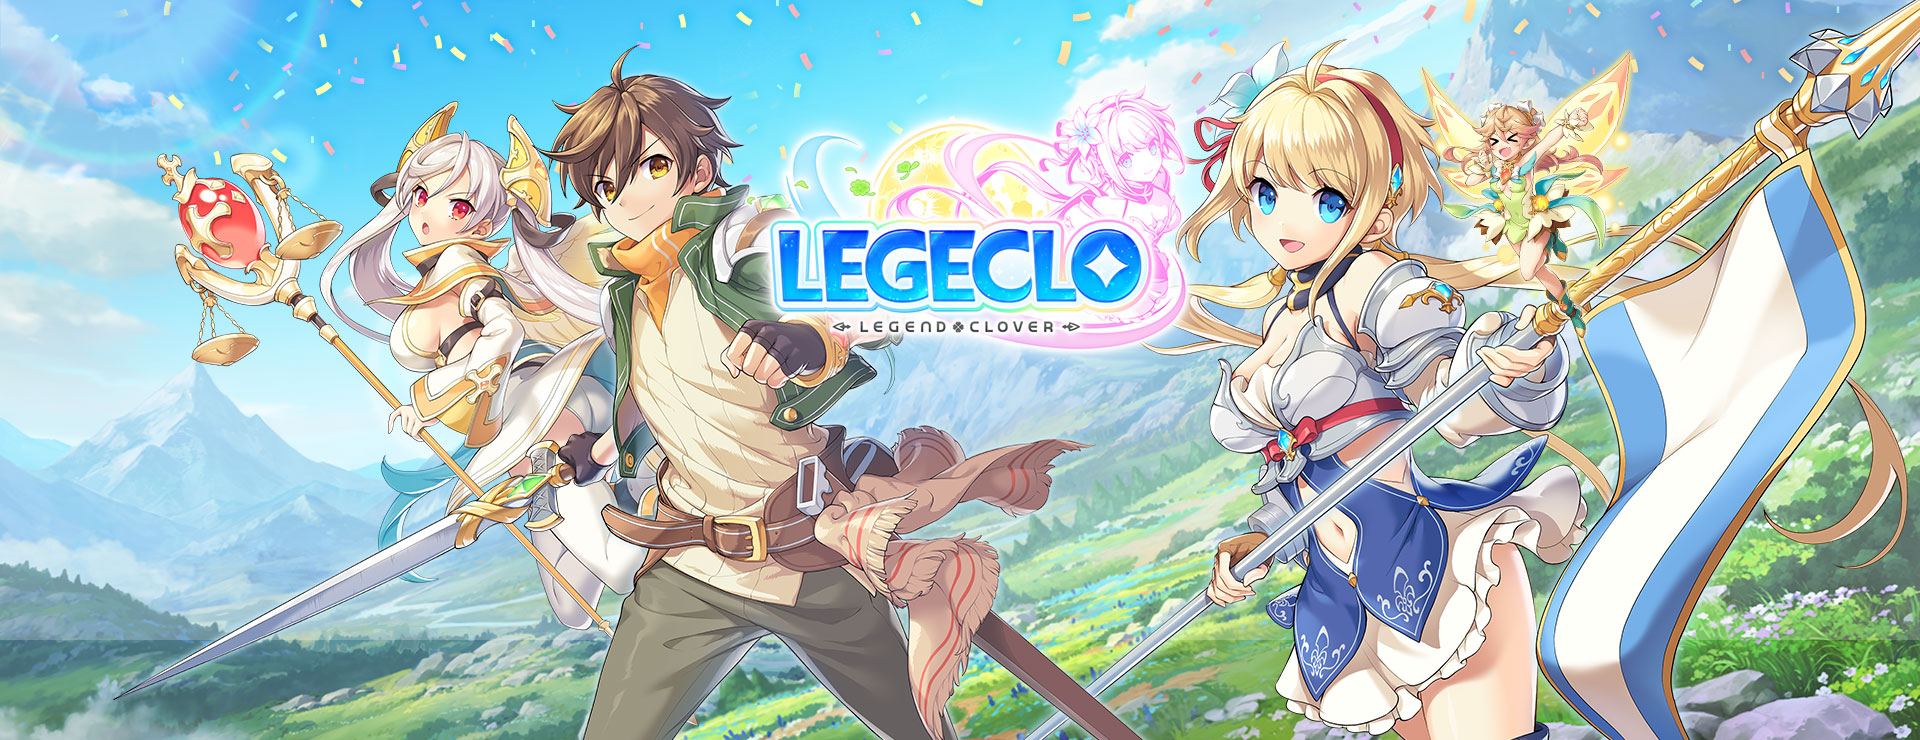 Legeclo: Legend Clover - Basé sur le Tour RPG Jeu